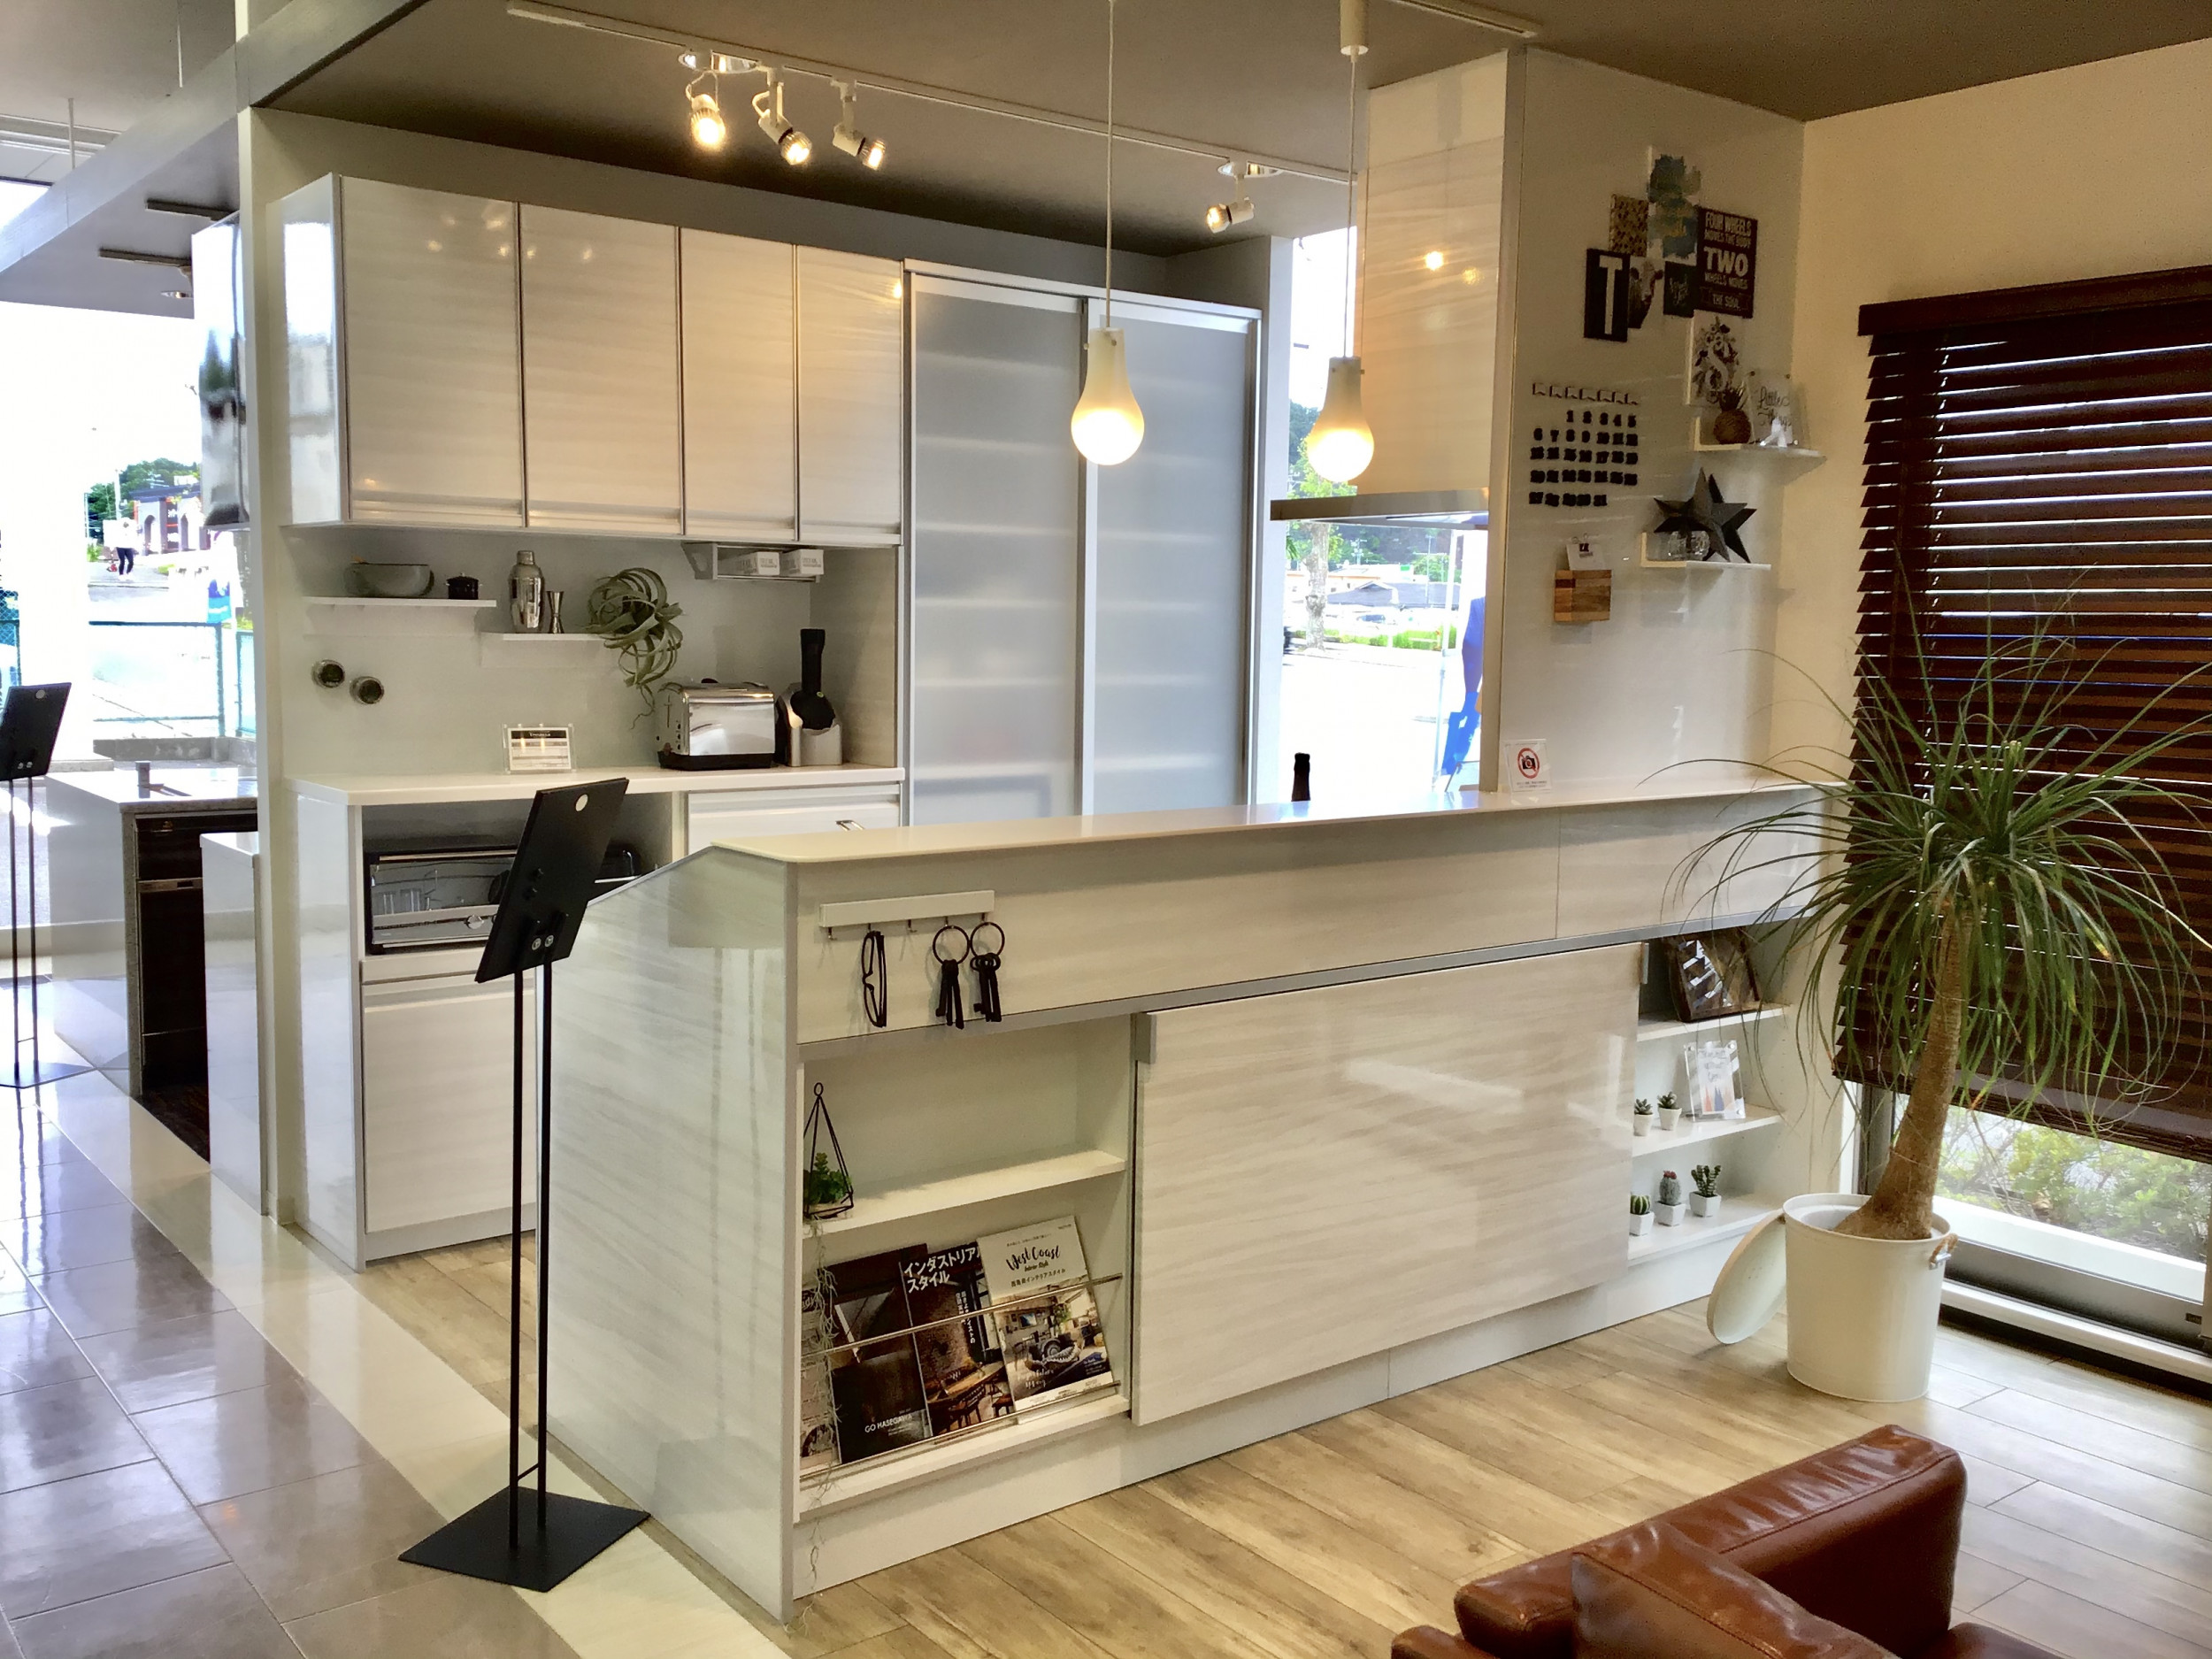 キッチン トレーシア I型 ペニンシュラ型 対面式 レイアウトの設置イメージ いわきショールーム タカラスタンダード